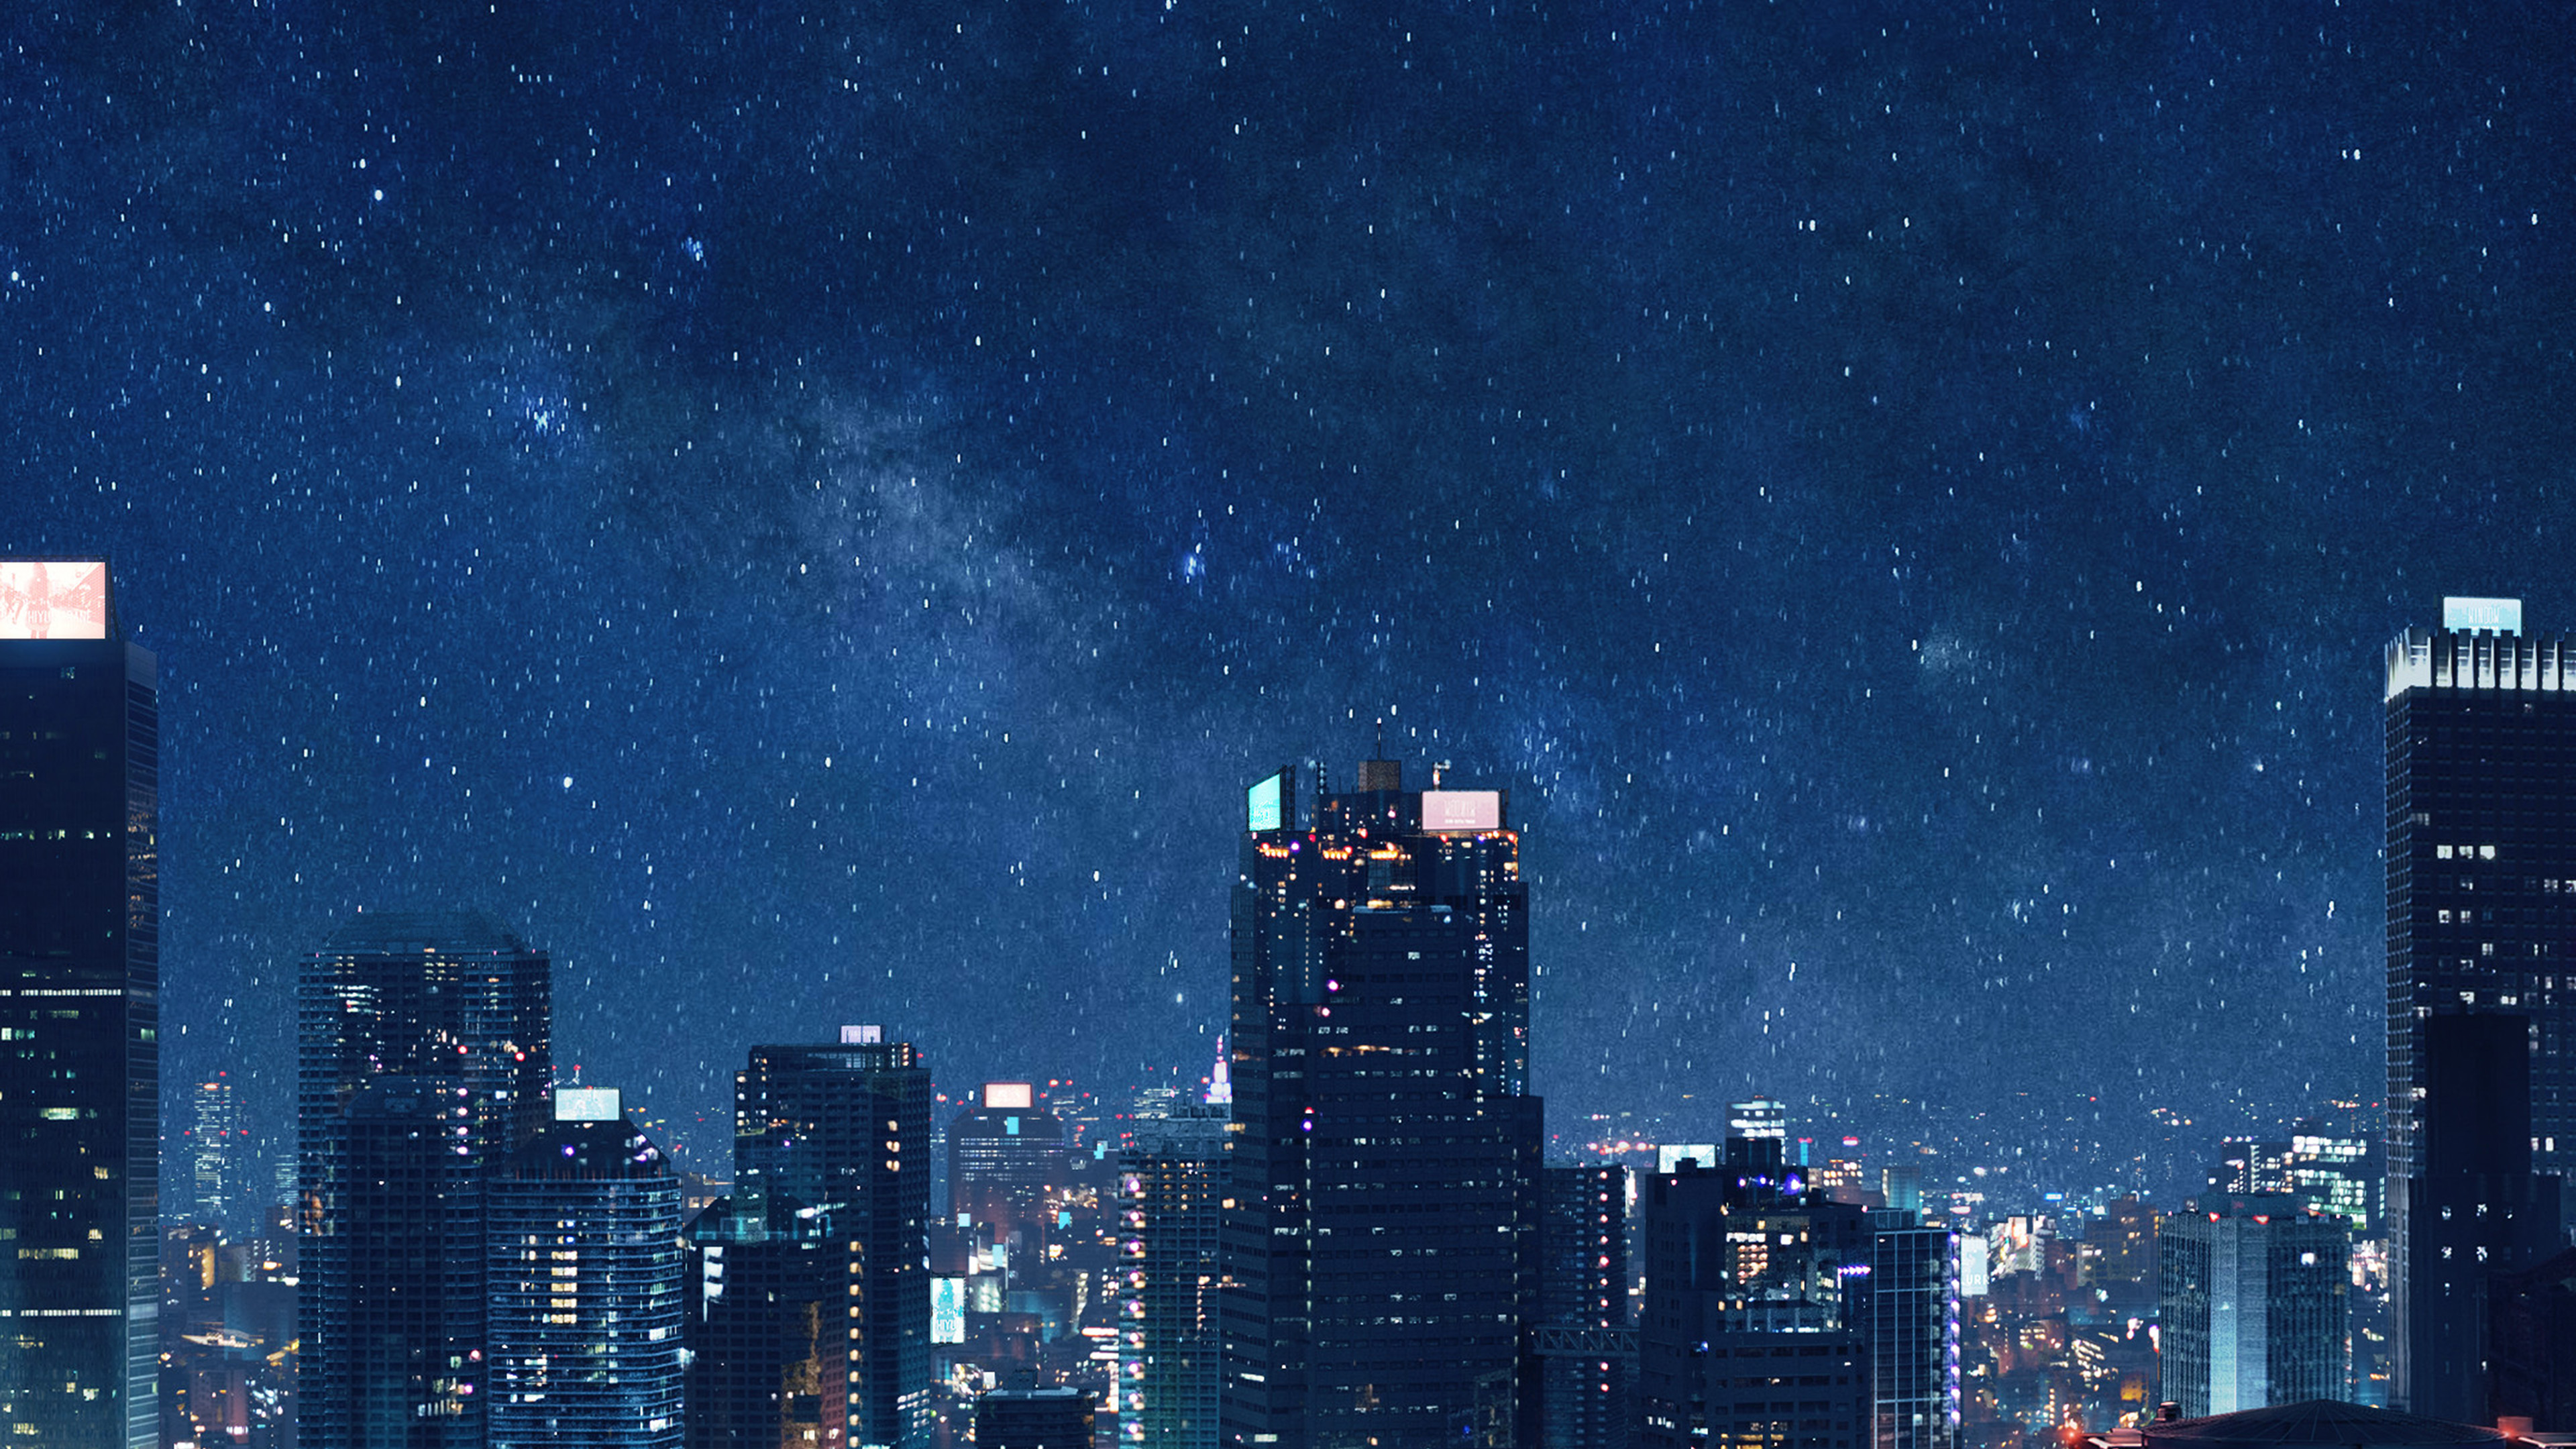 wallpaper for desktop, laptop. art night anime city